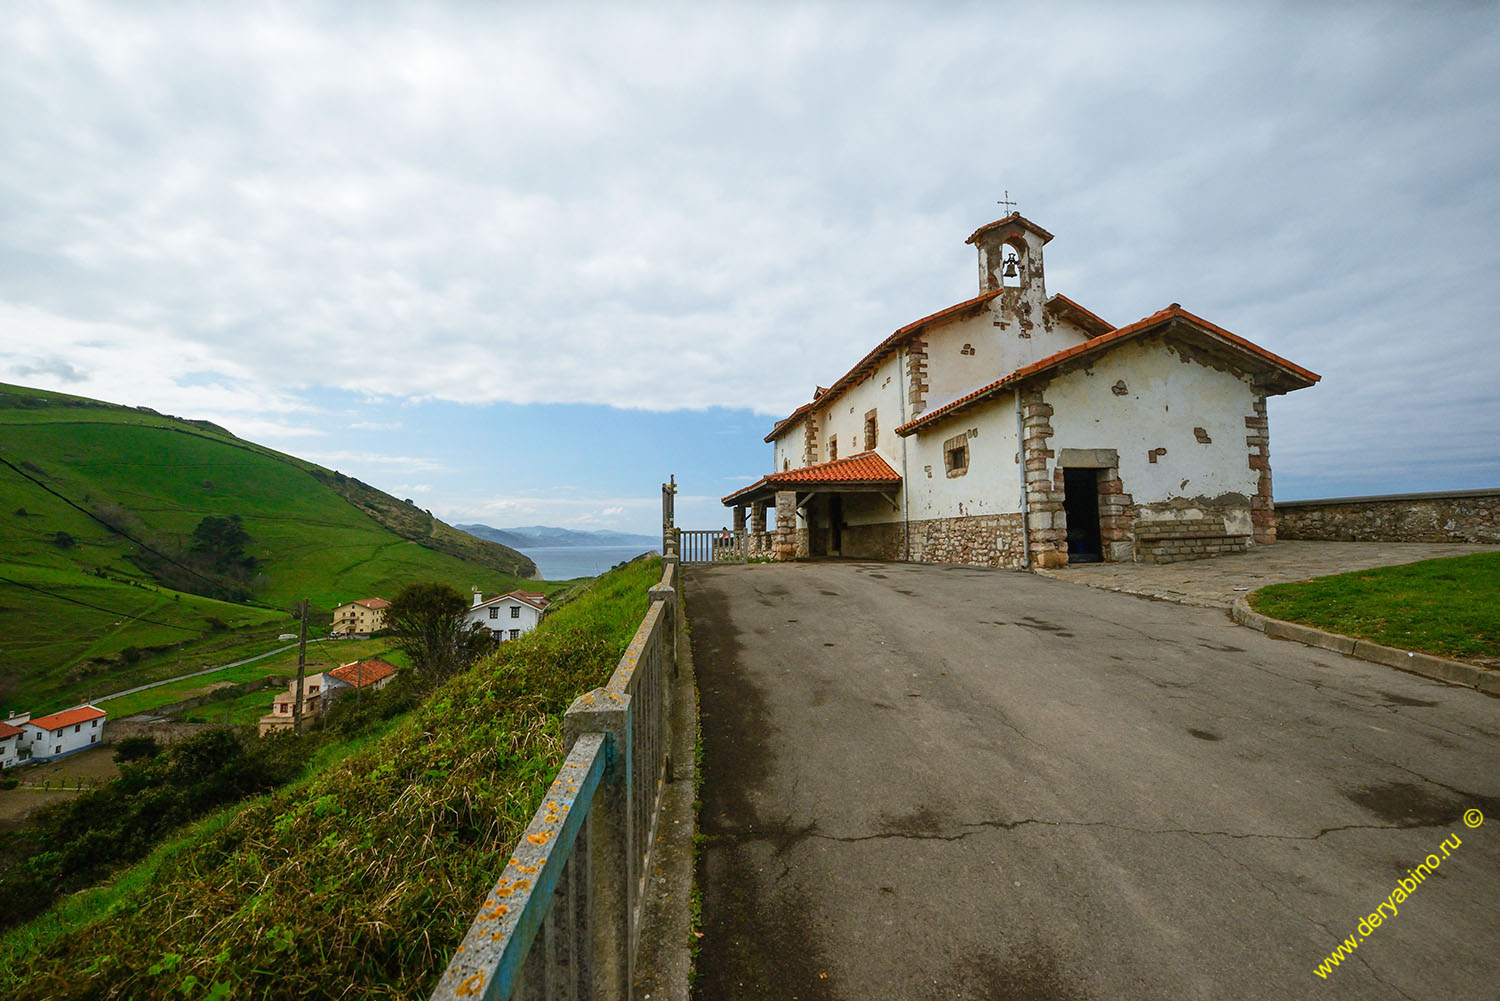   Basque Country  Zumaia